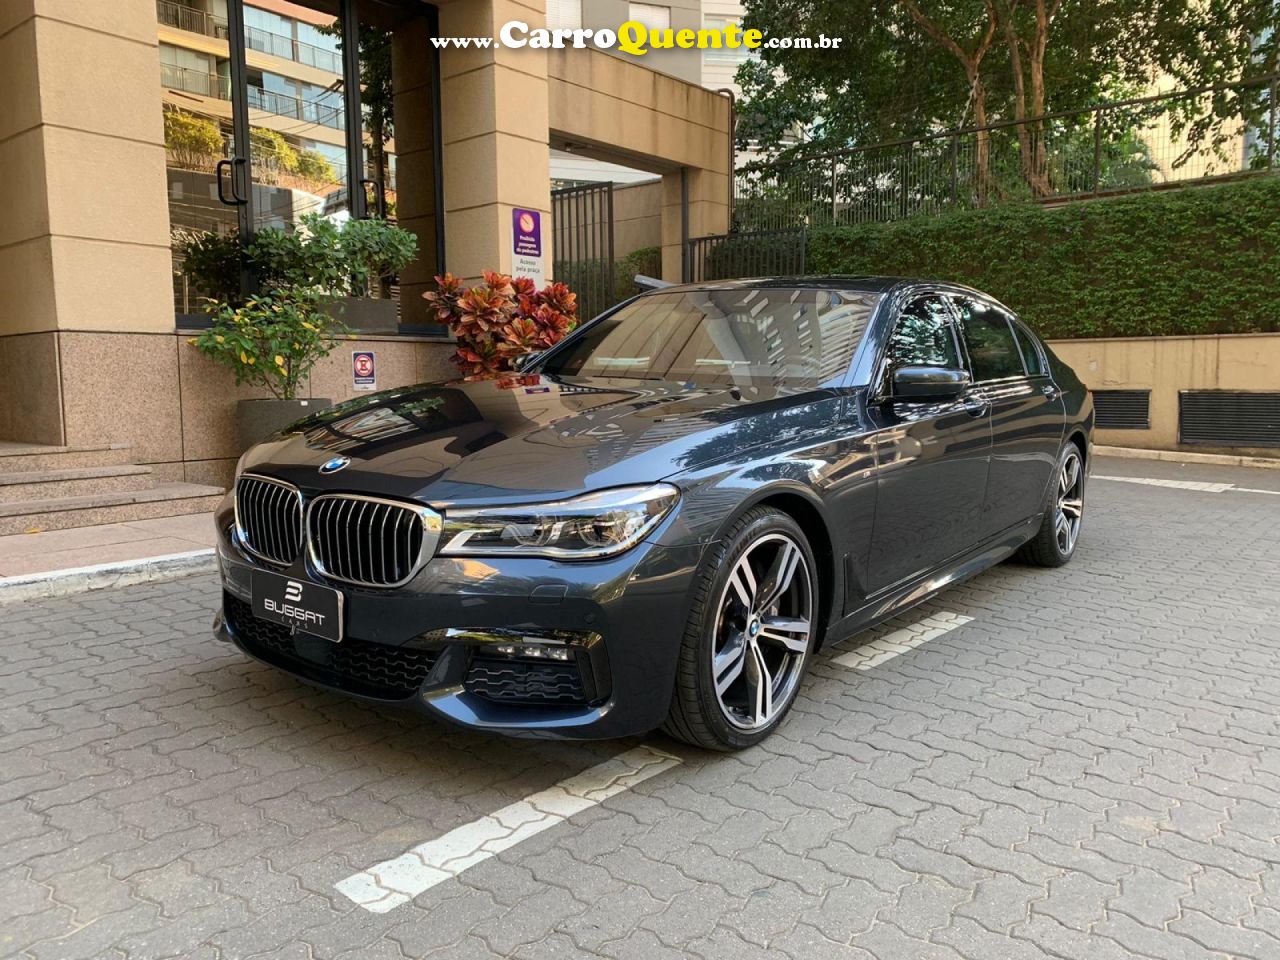 BMW   4.4 M SPORT V8 32V GASOLINA 4P   CINZA 2017 4.4 GASOLINA - Loja